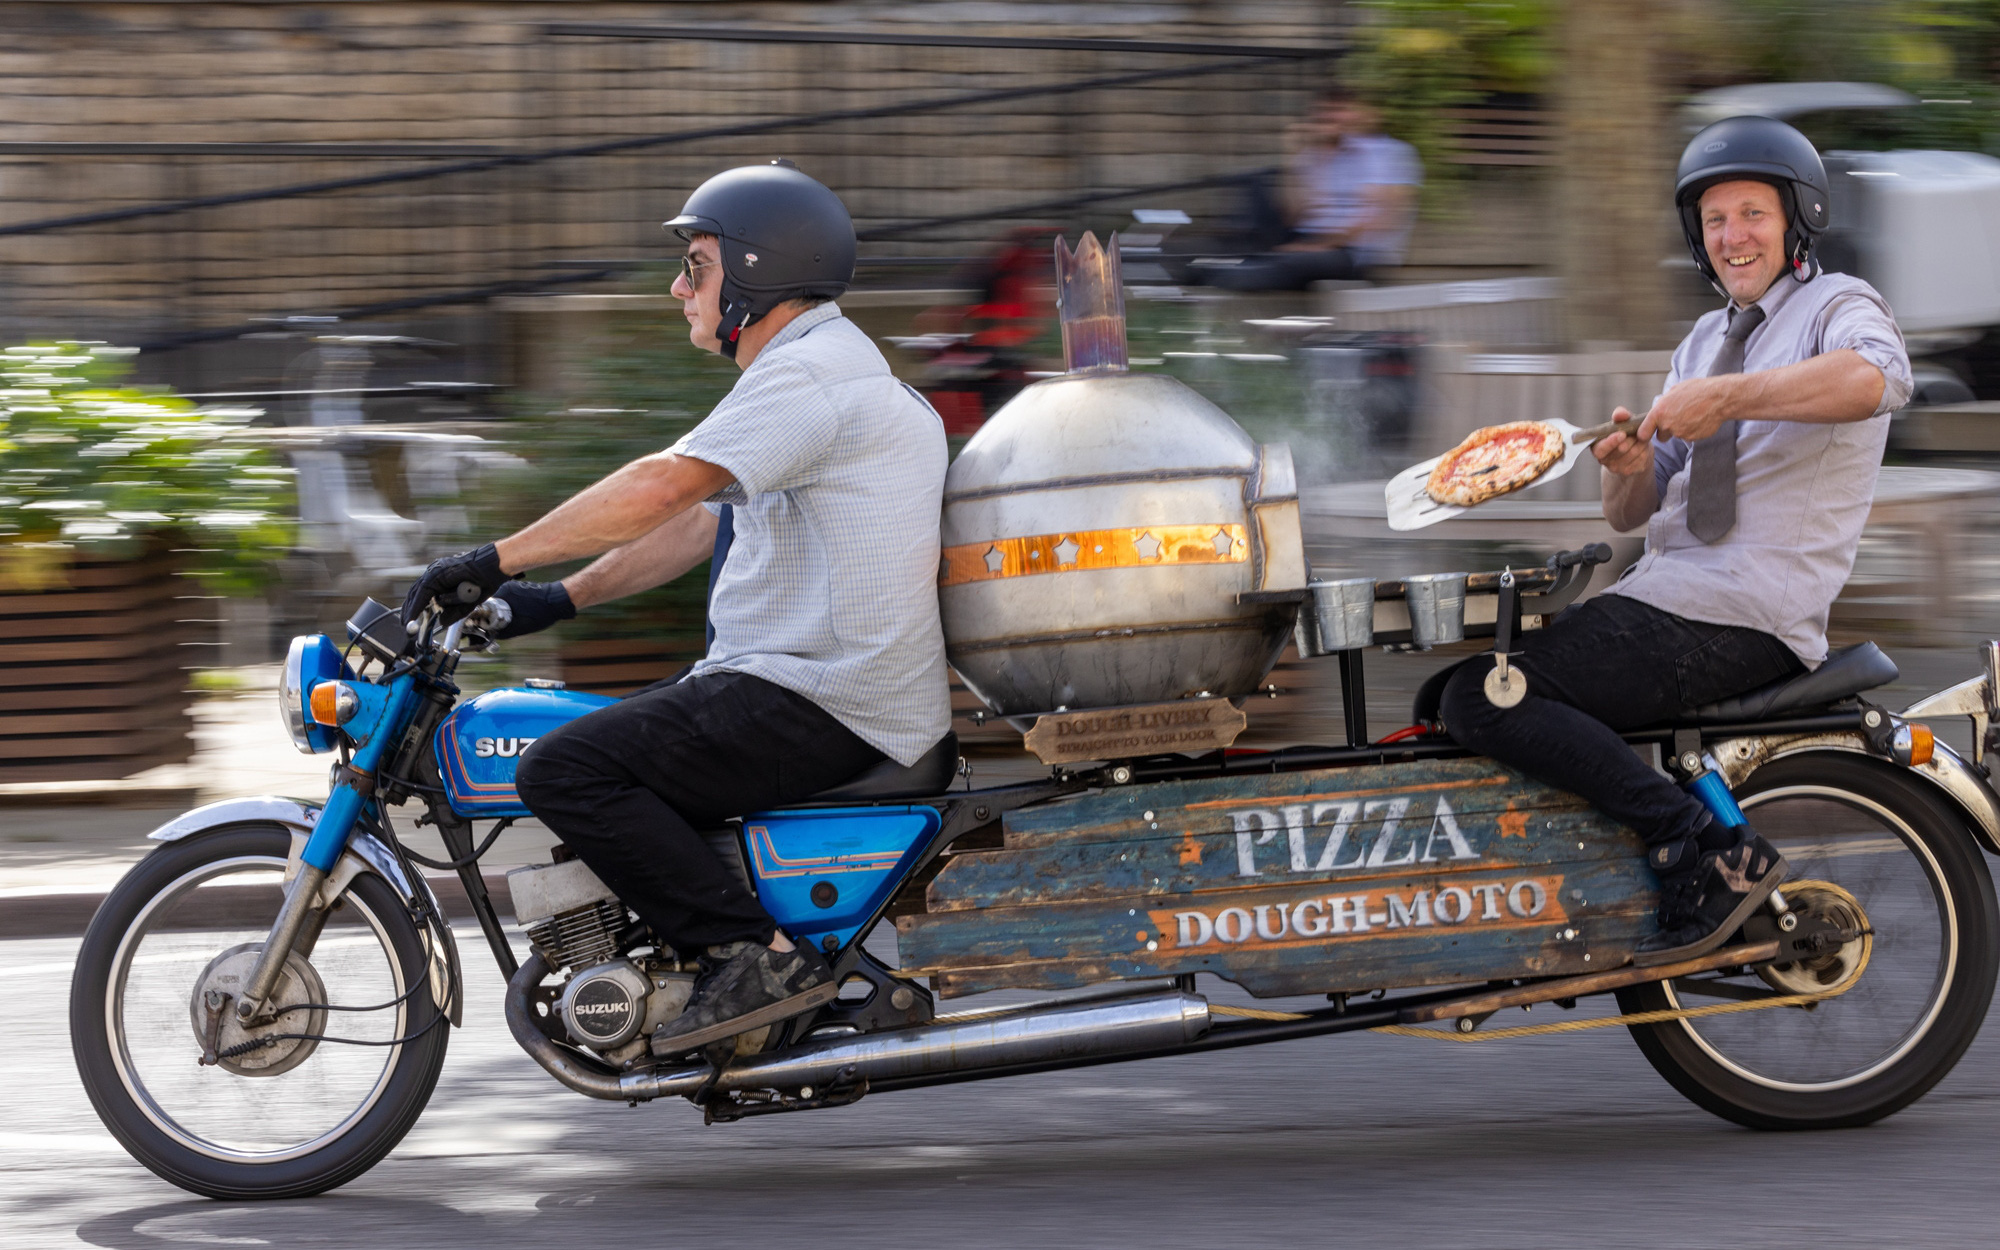 Xe máy trang bị lò nướng pizza: Thú vị, nhưng cũng có vấn đề